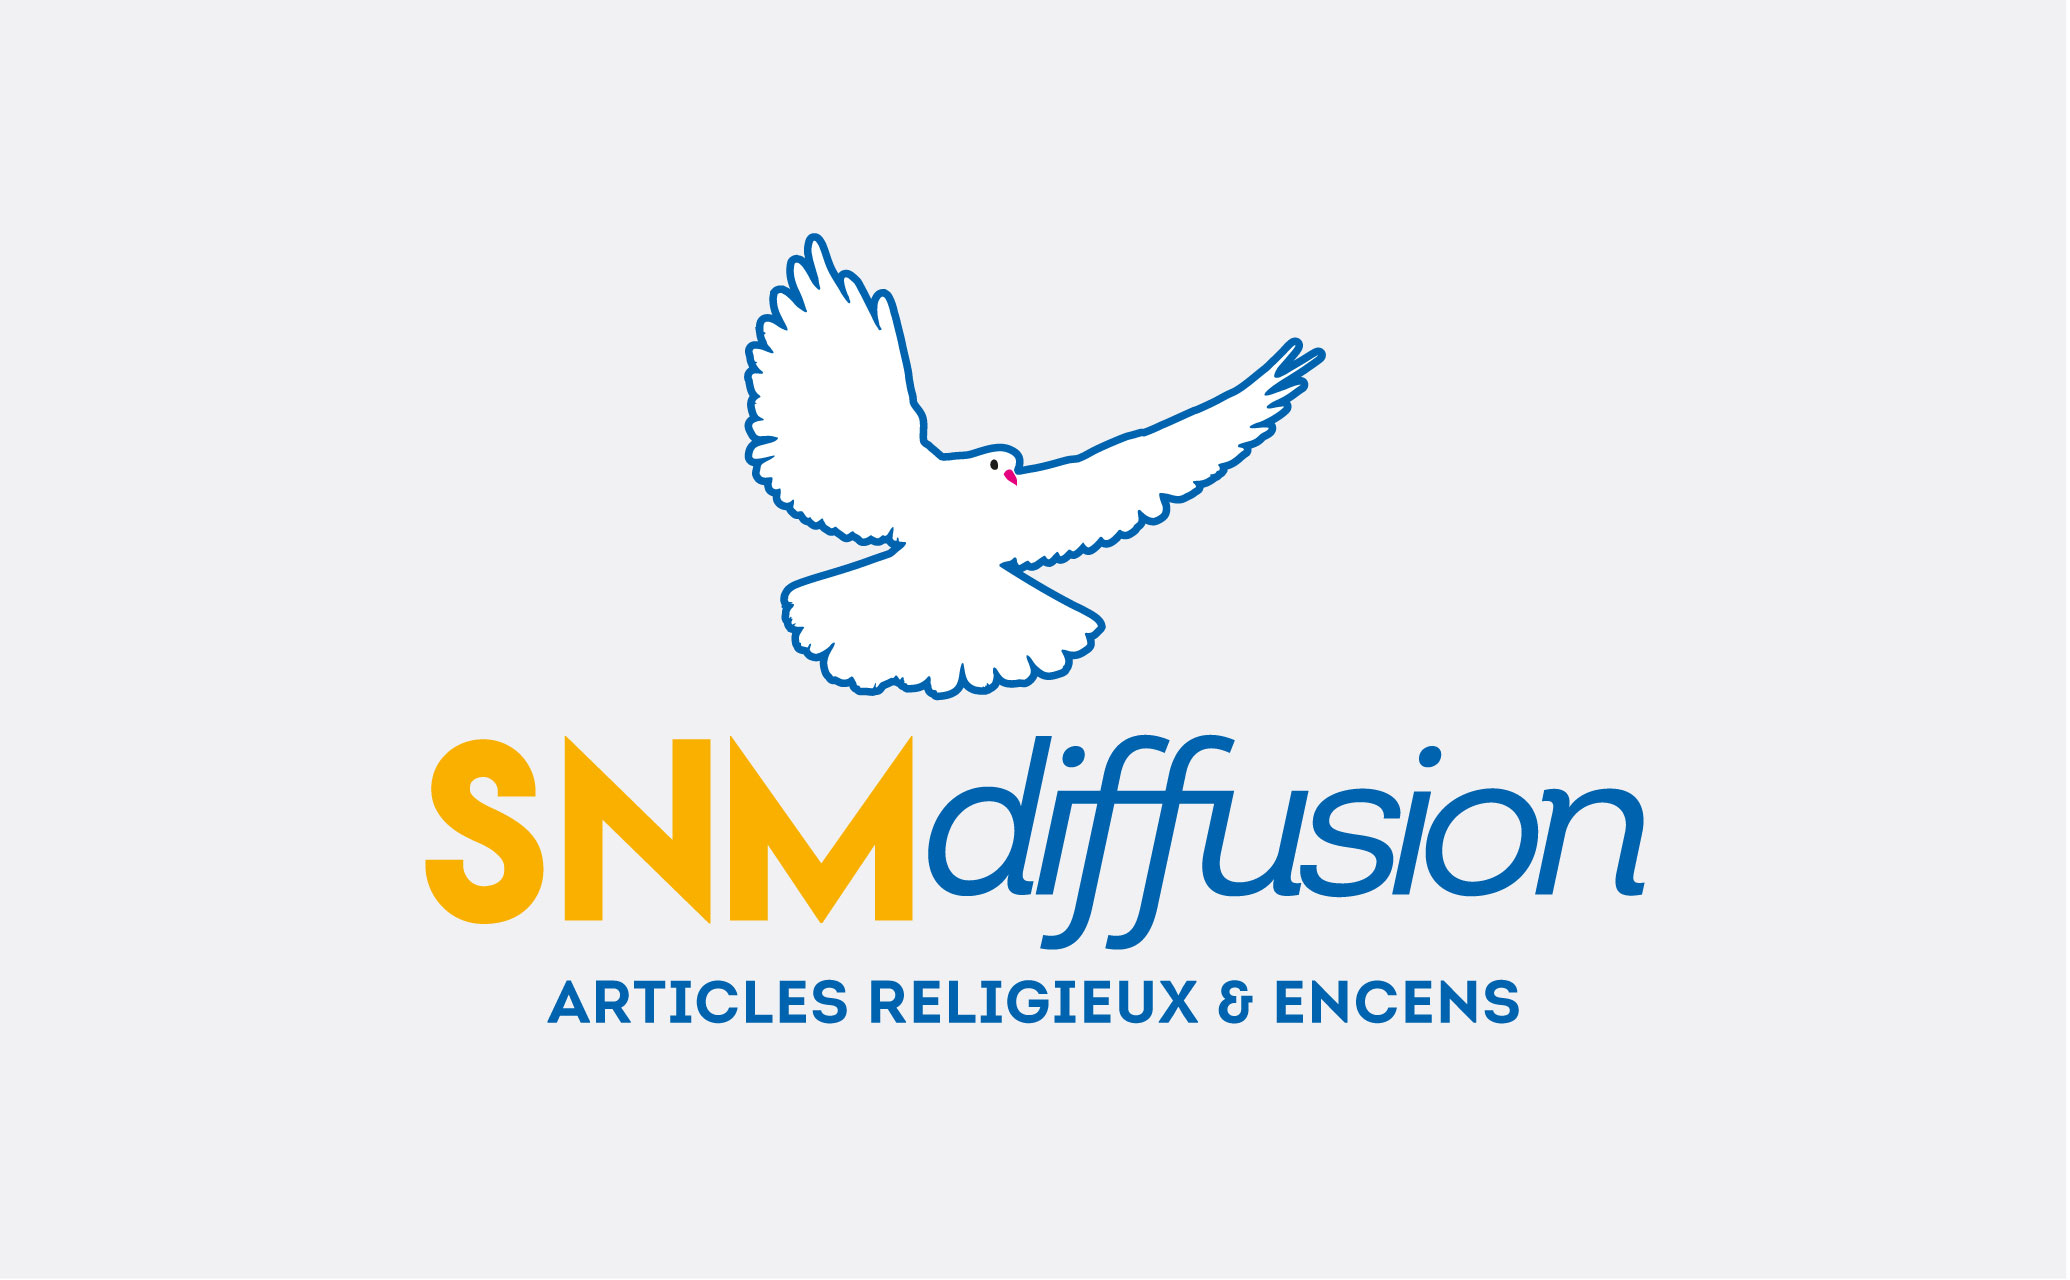 SNM-diffusion-articles religieux & encens-identité visuelle